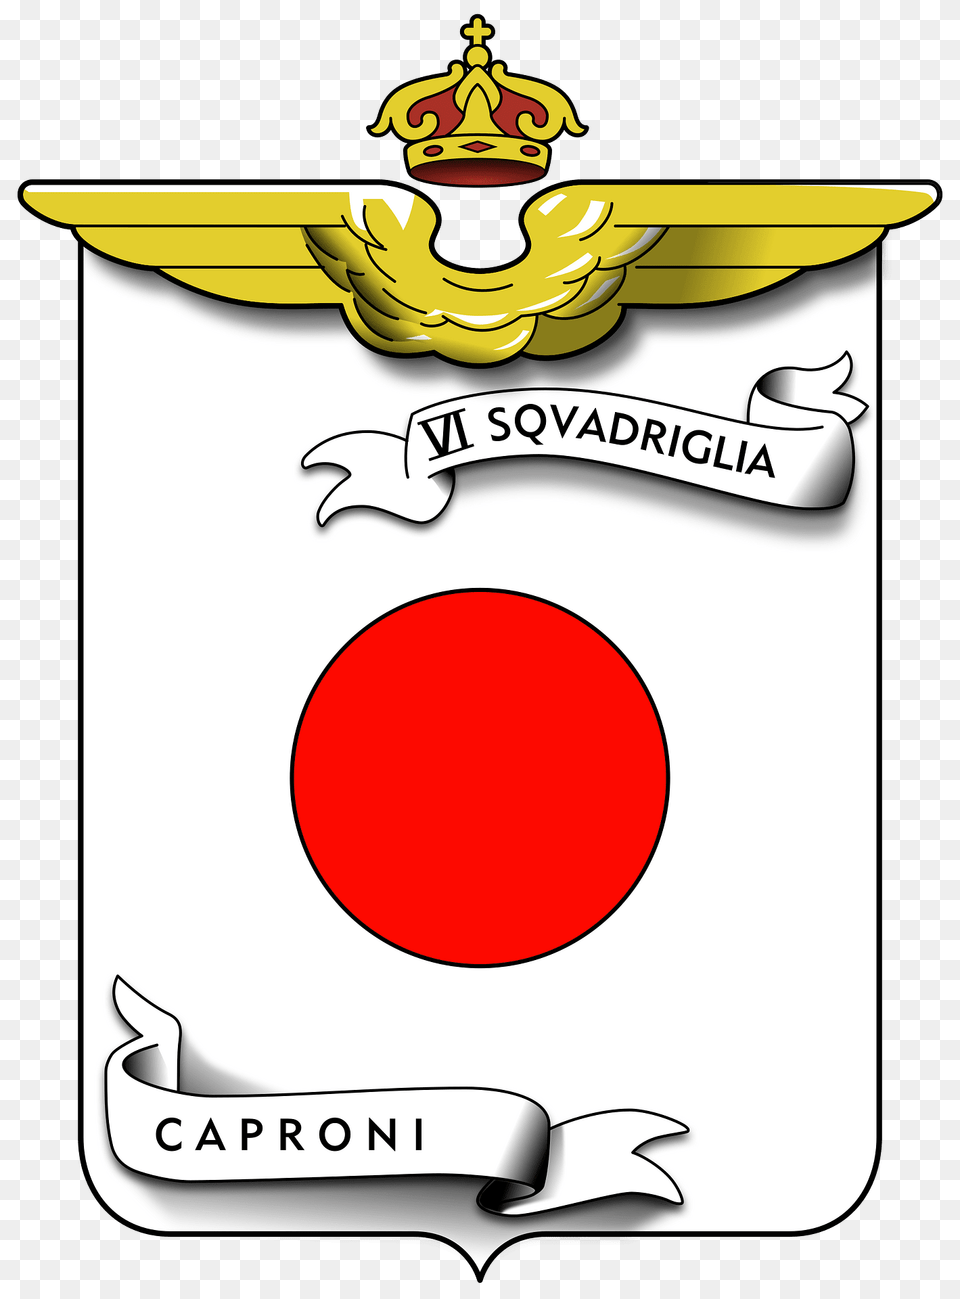 Coa Vi Squadriglia Caproni Clipart, Logo, Smoke Pipe Png Image